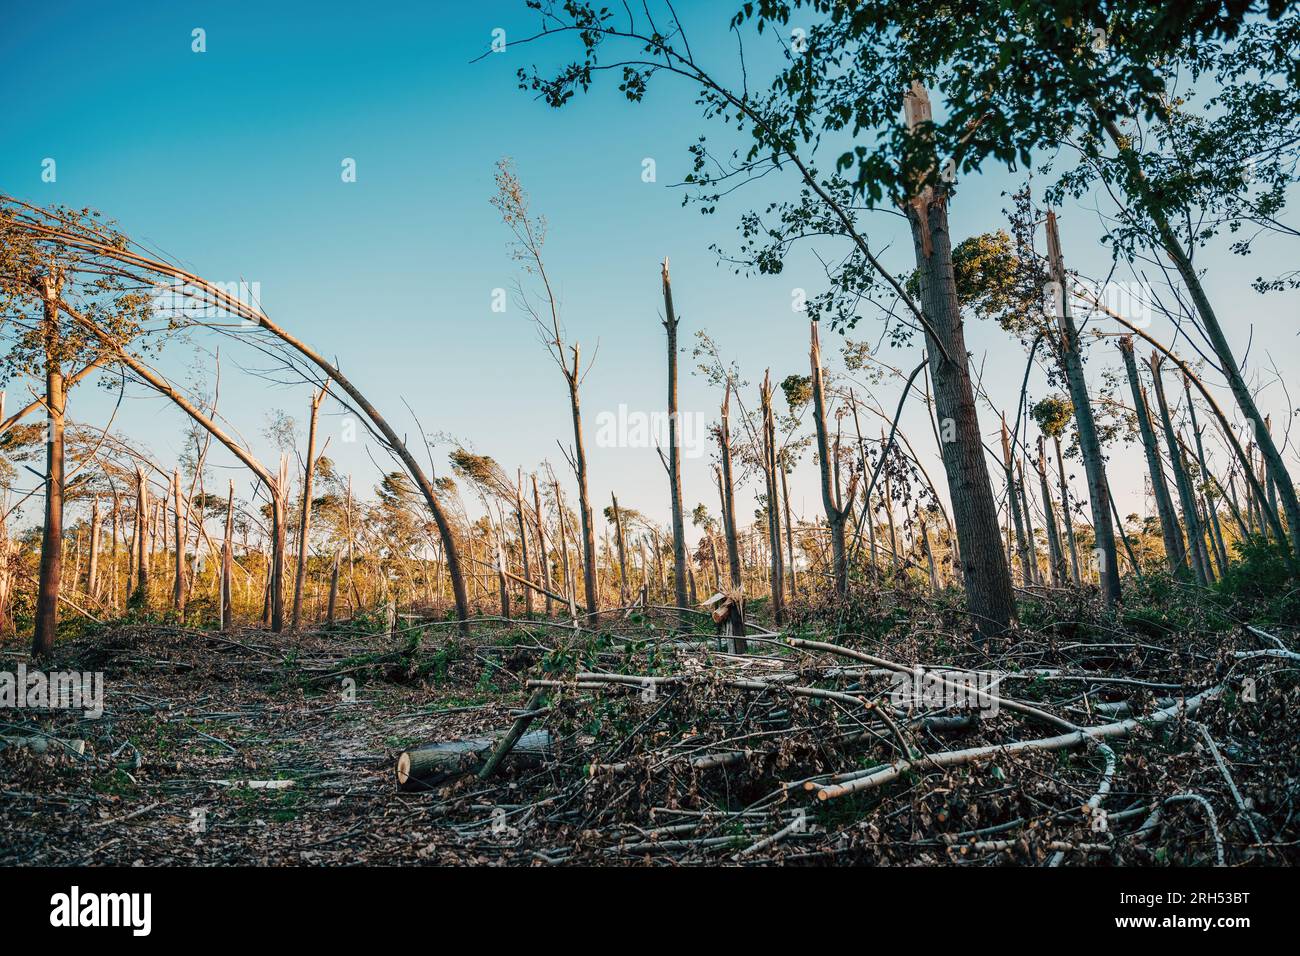 Dommages environnementaux, paysage forestier caduque dévasté après une violente tempête supercellulaire estivale avec vent fort, focalisation sélective Banque D'Images